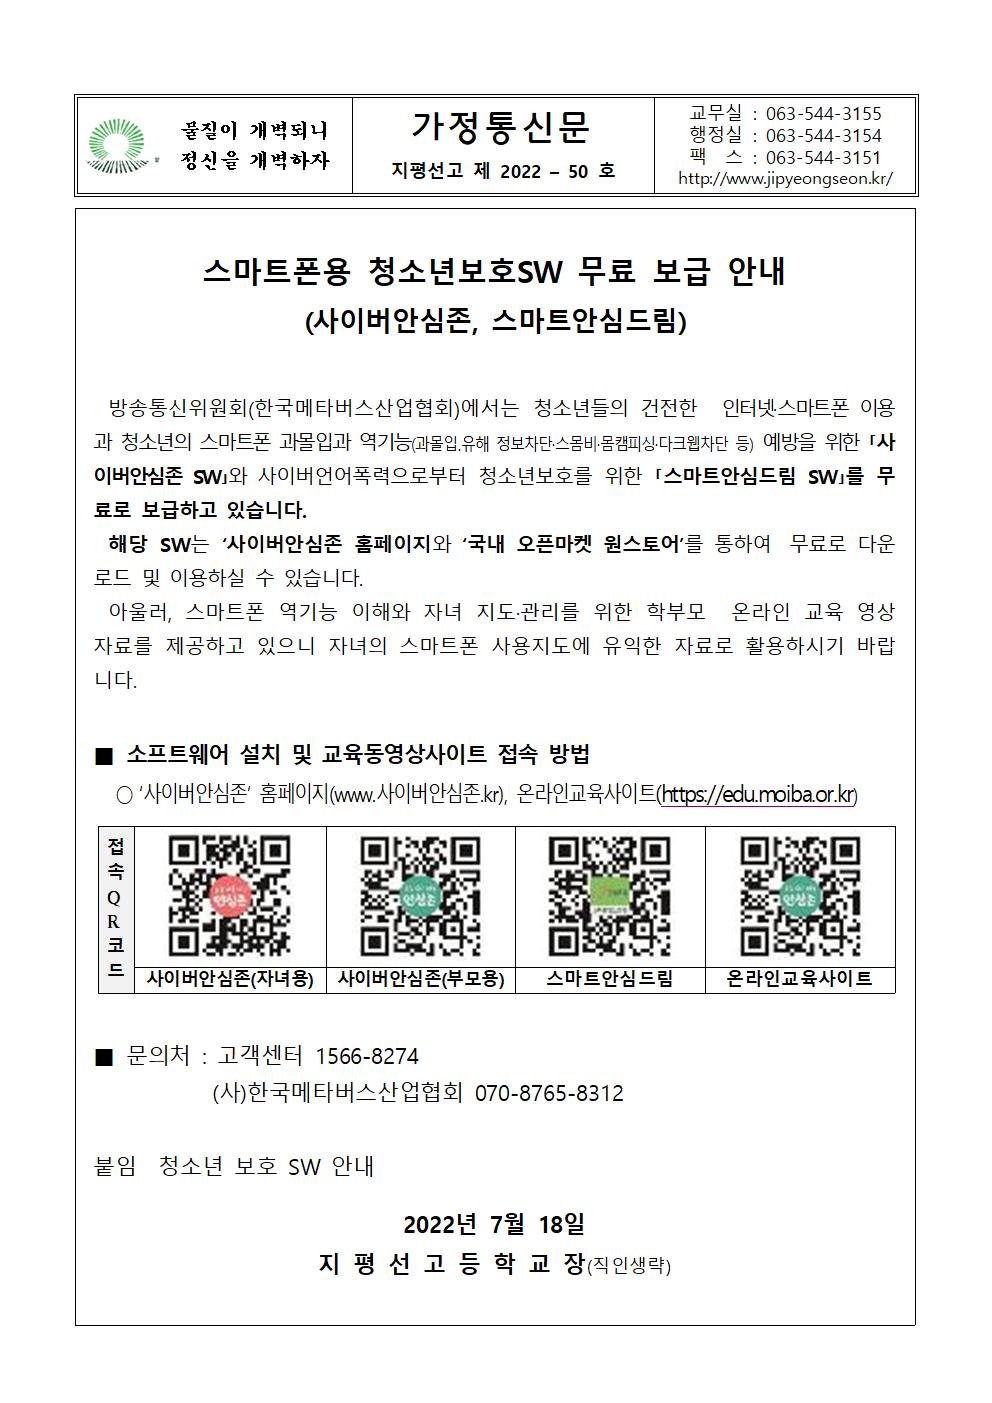 가정통신문 2022-50호 스마트폰용 청소년보호SW 무료 보급 안내001